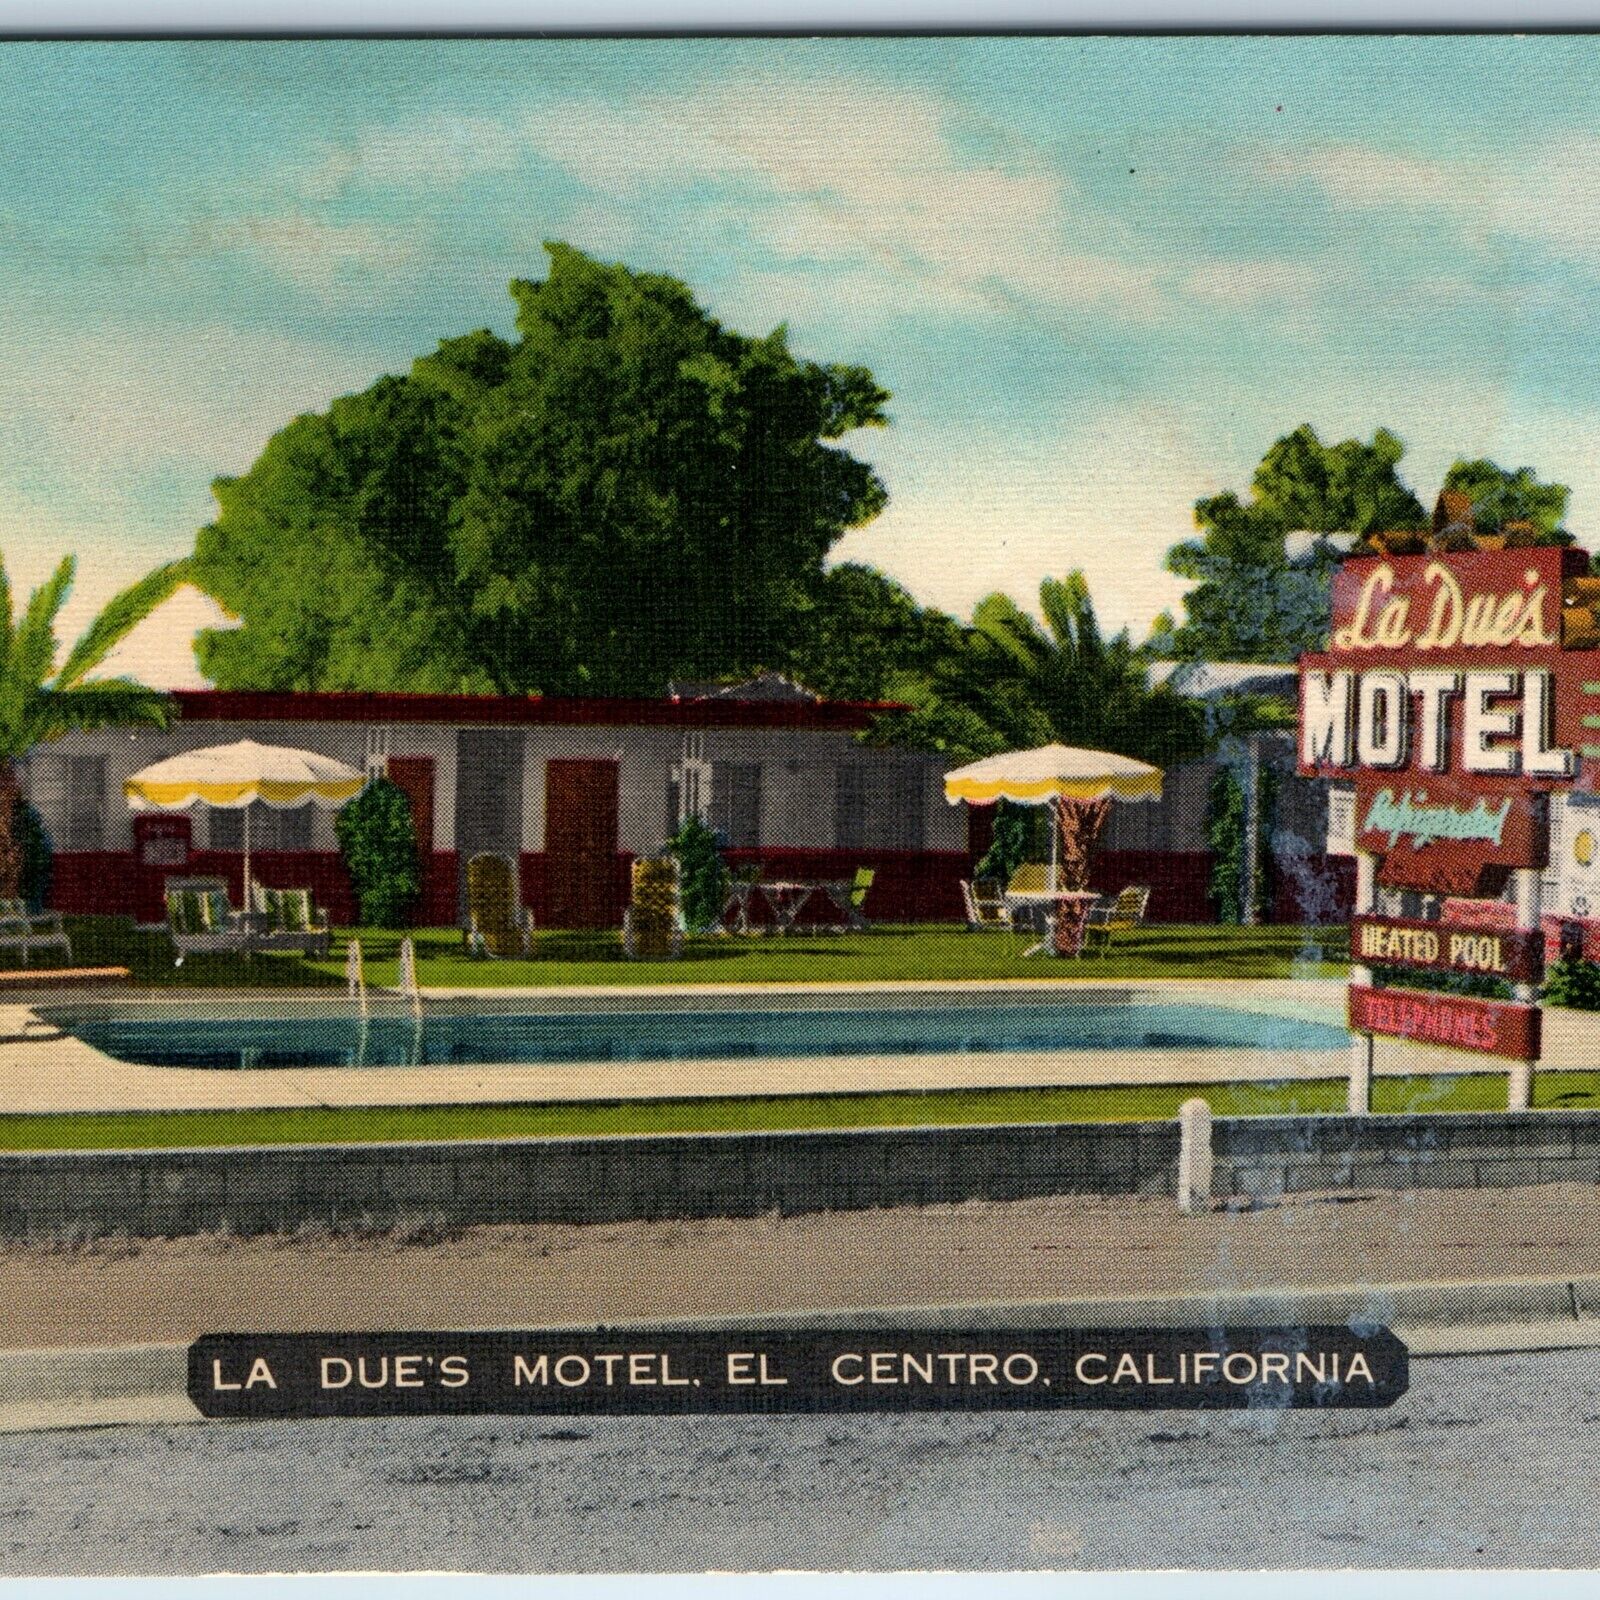 c1940s El Centro CA La Due's Motel Pool Roadside Umbrella Tree Neon Sign PC A219